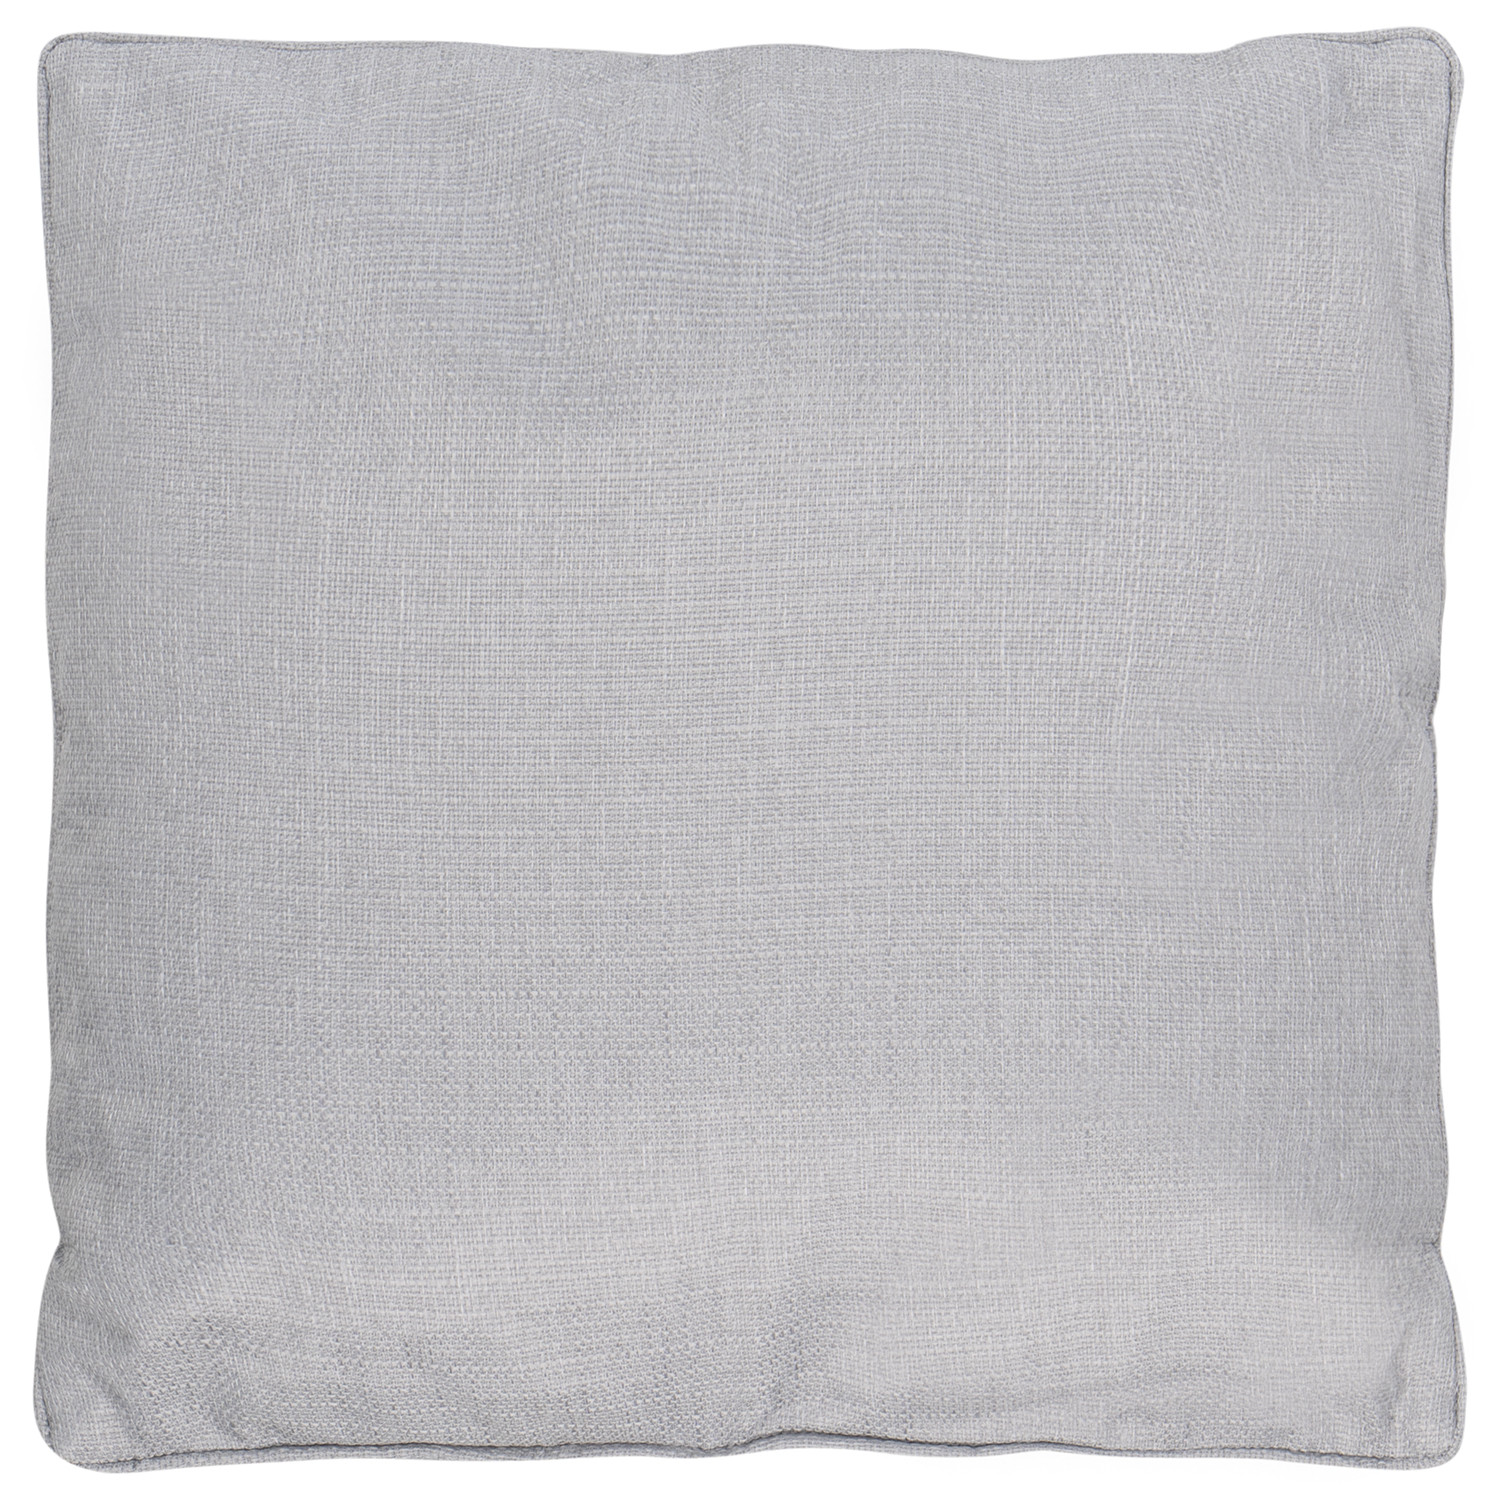 Divante Hoxton Silver Cushion 45 x 45cm Image 1